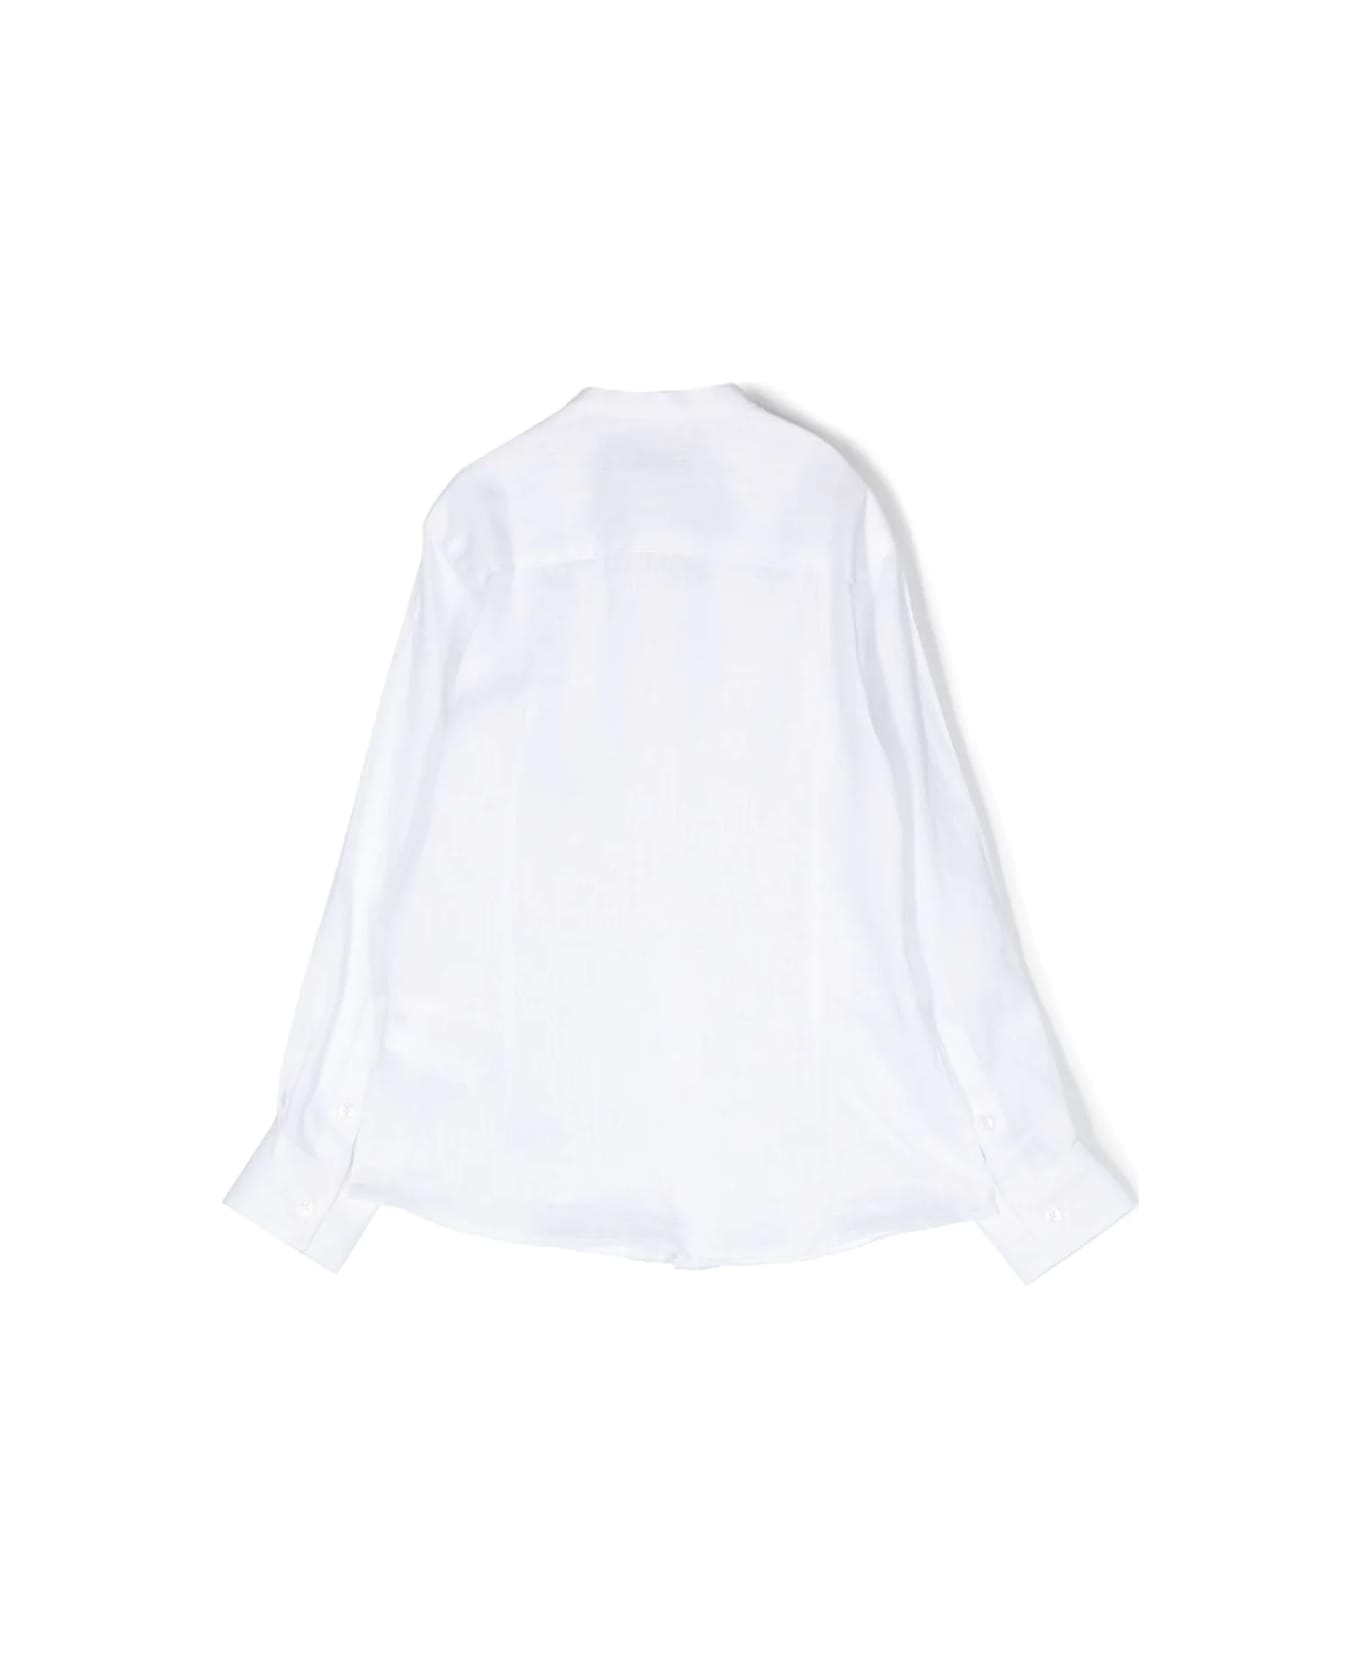 Paolo Pecora Korean Shirt - White